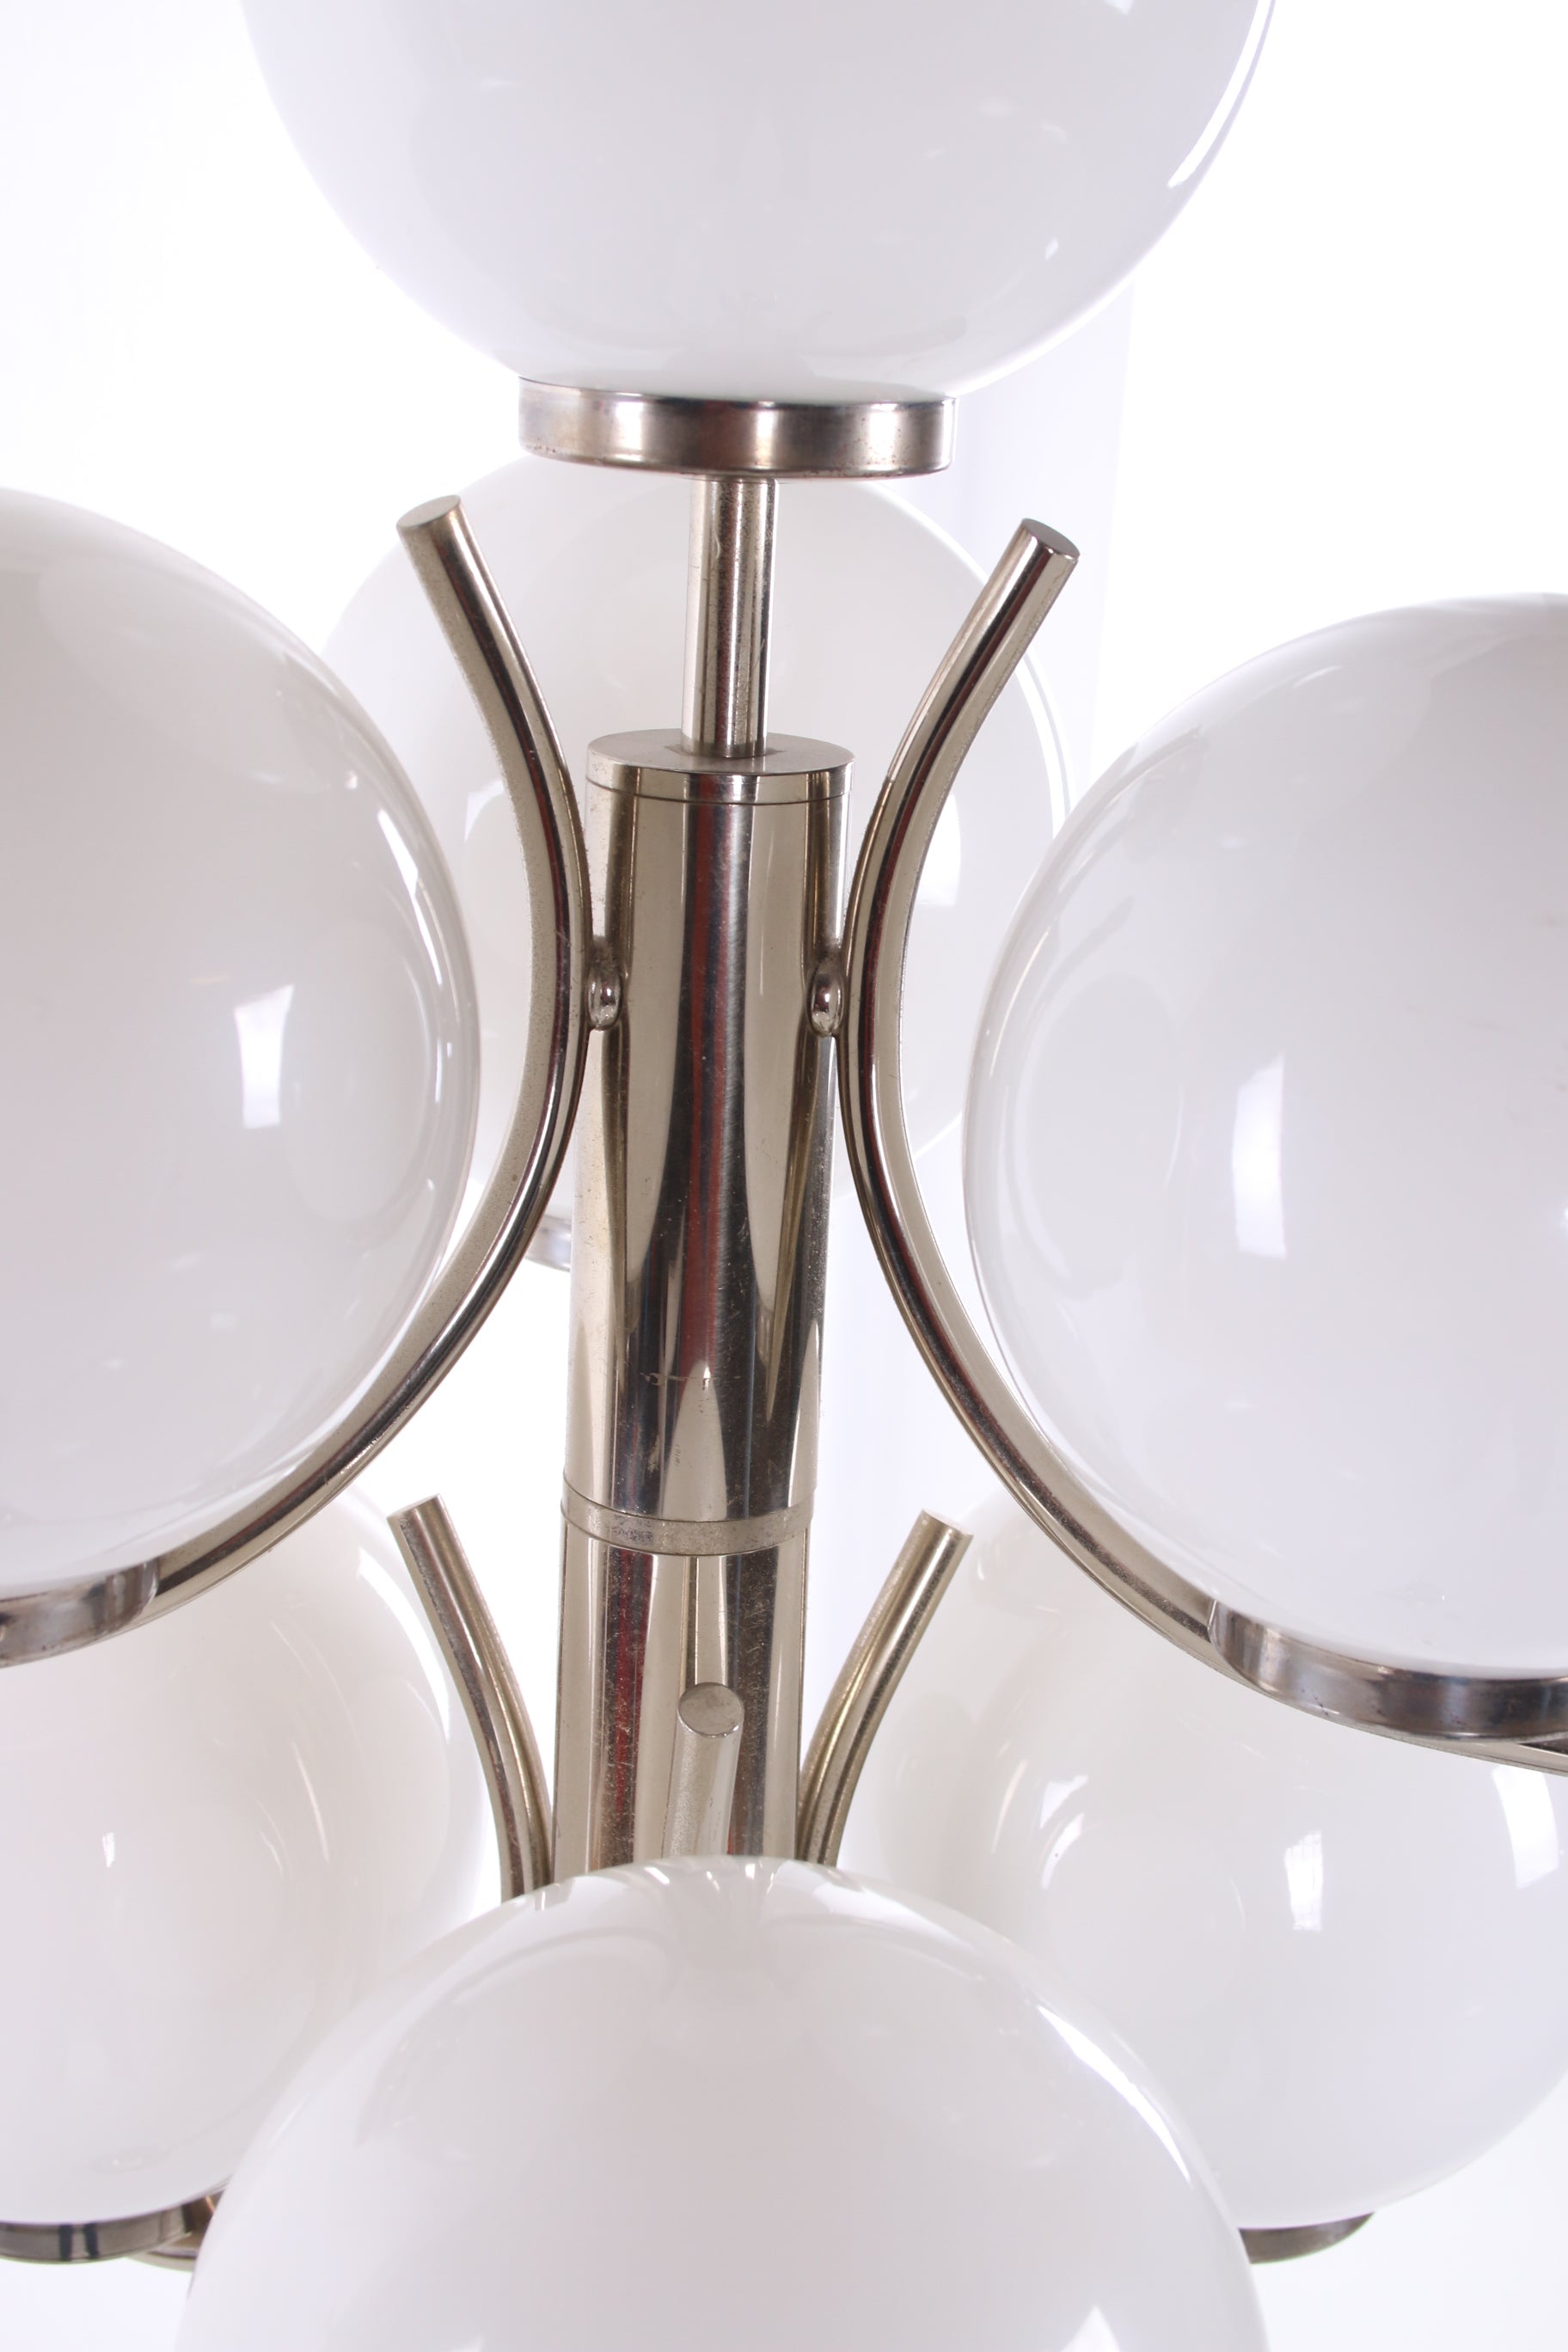 Vloerlamp chrome met 7 Witte glazenbollen detail boven